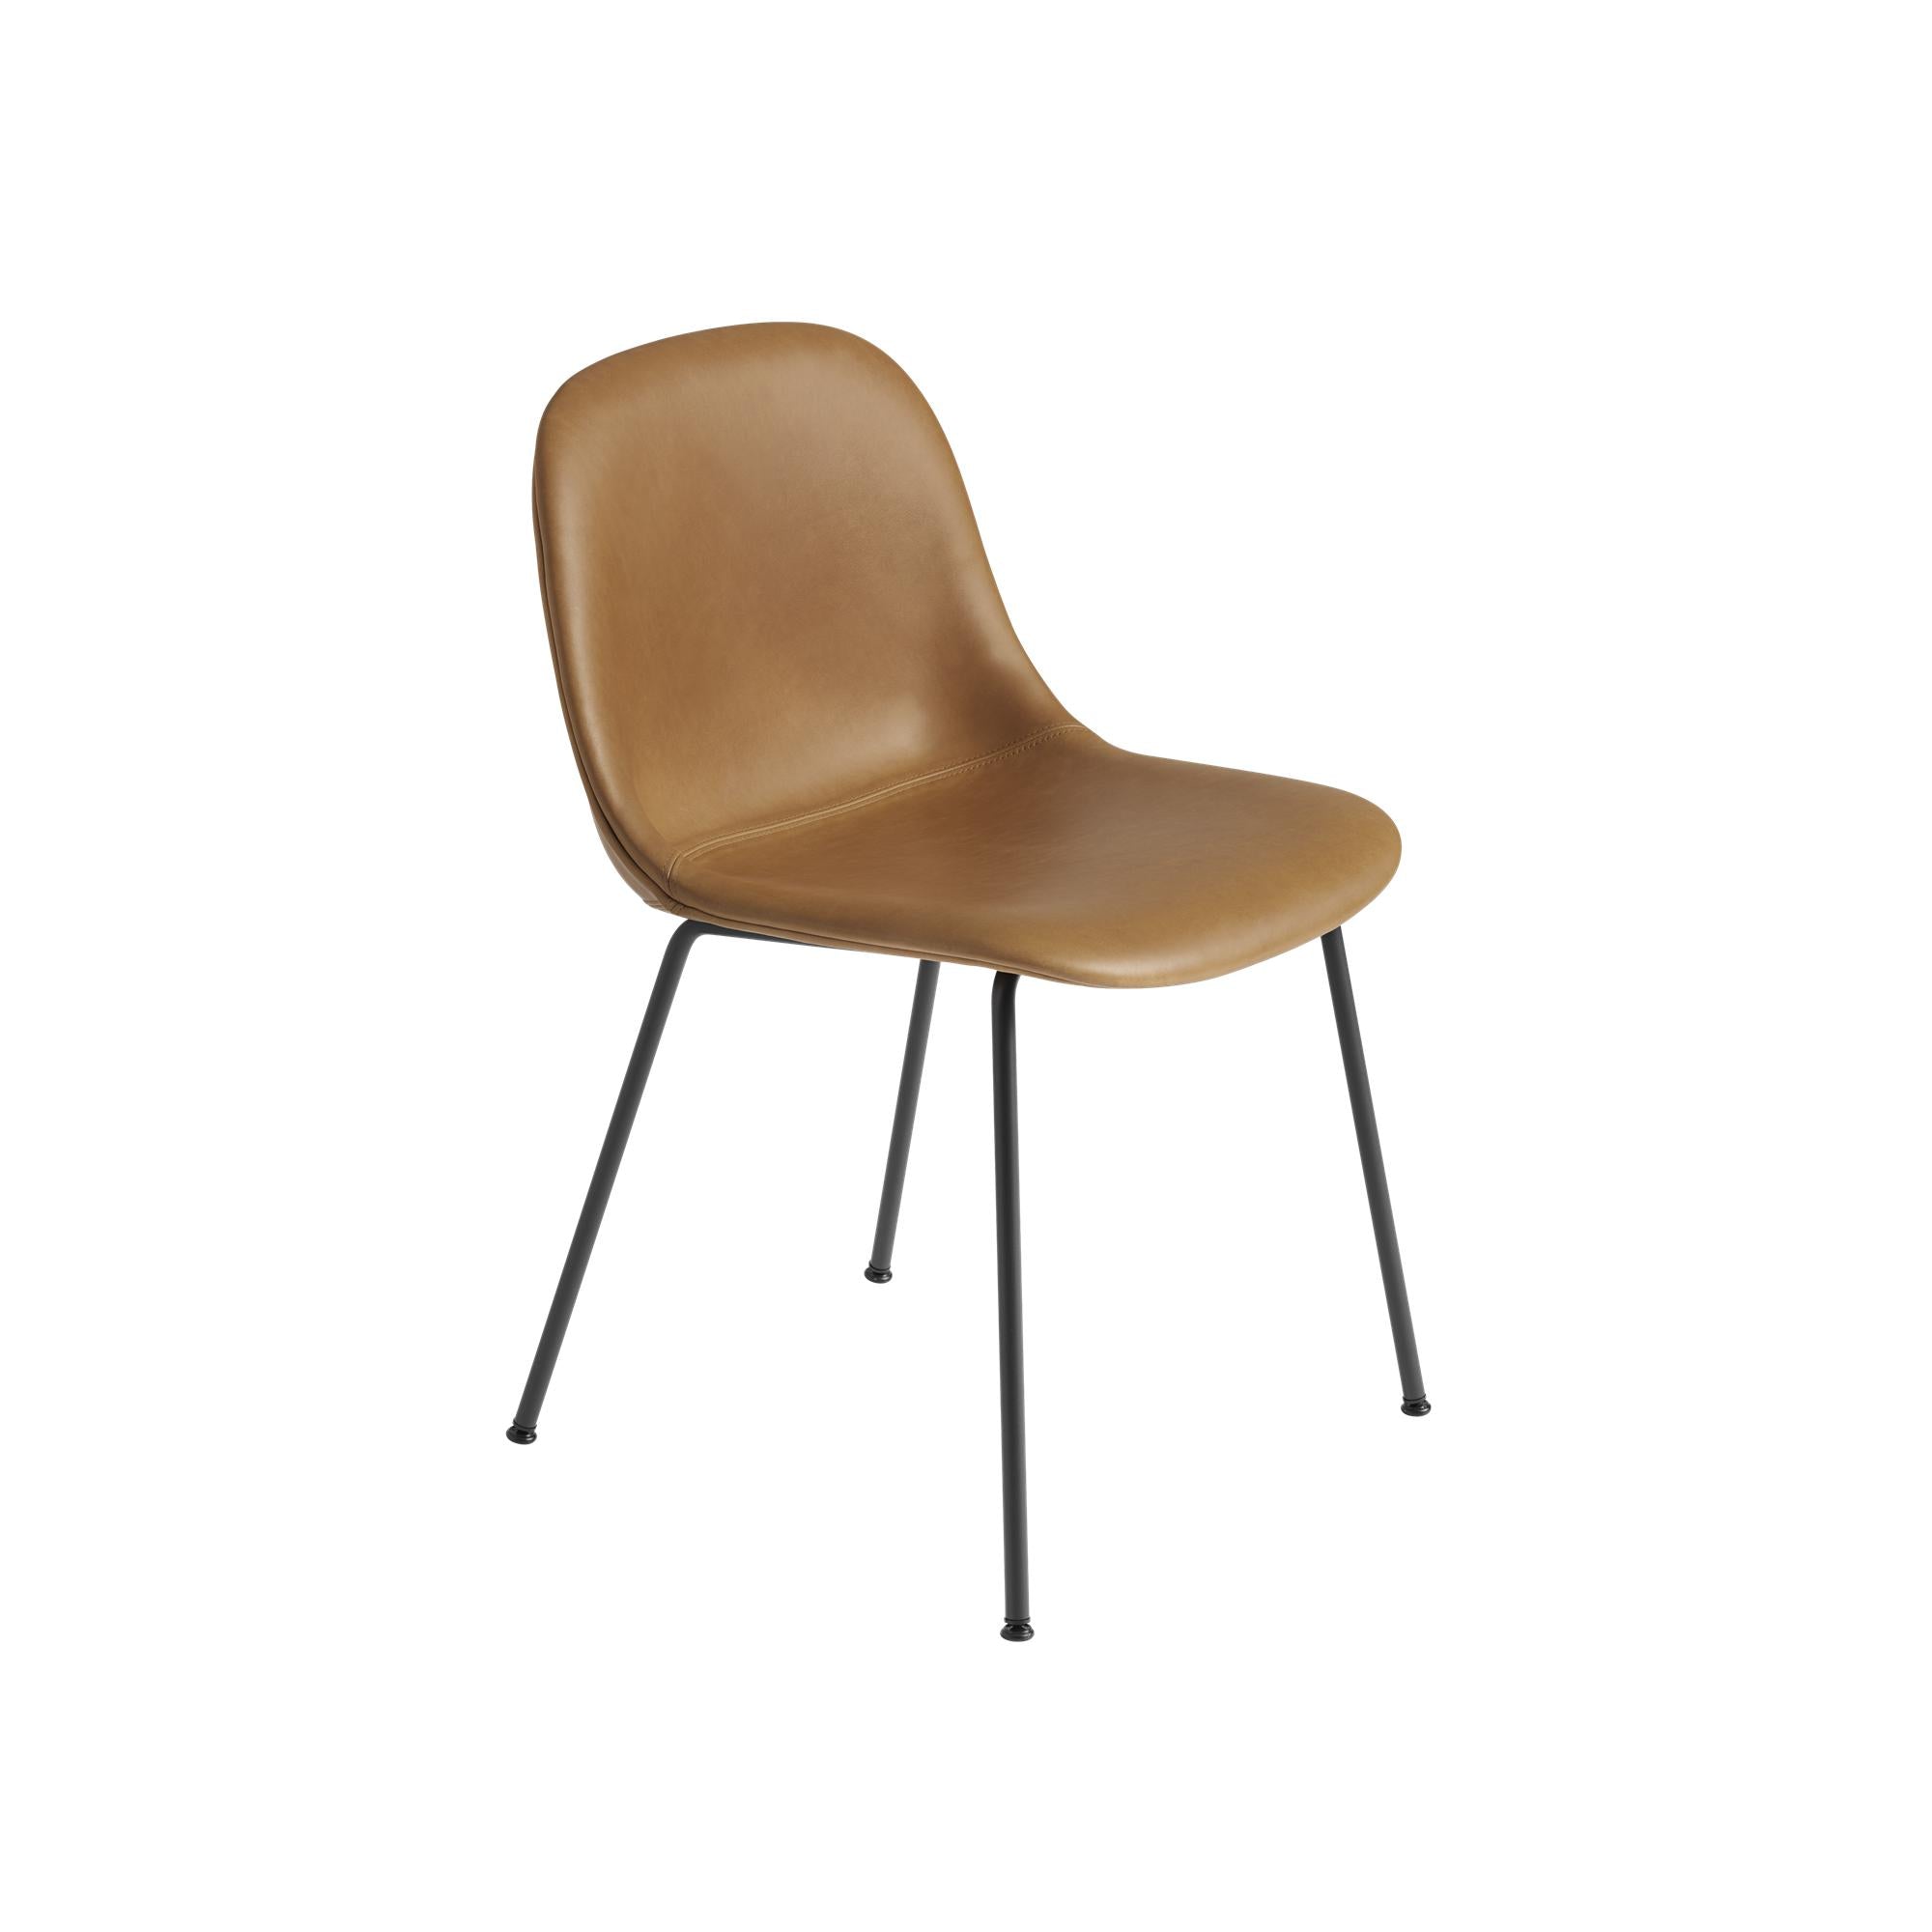 Base de tubo de silla lateral de fibra muuto, asiento de cuero, cuero de coñac marrón